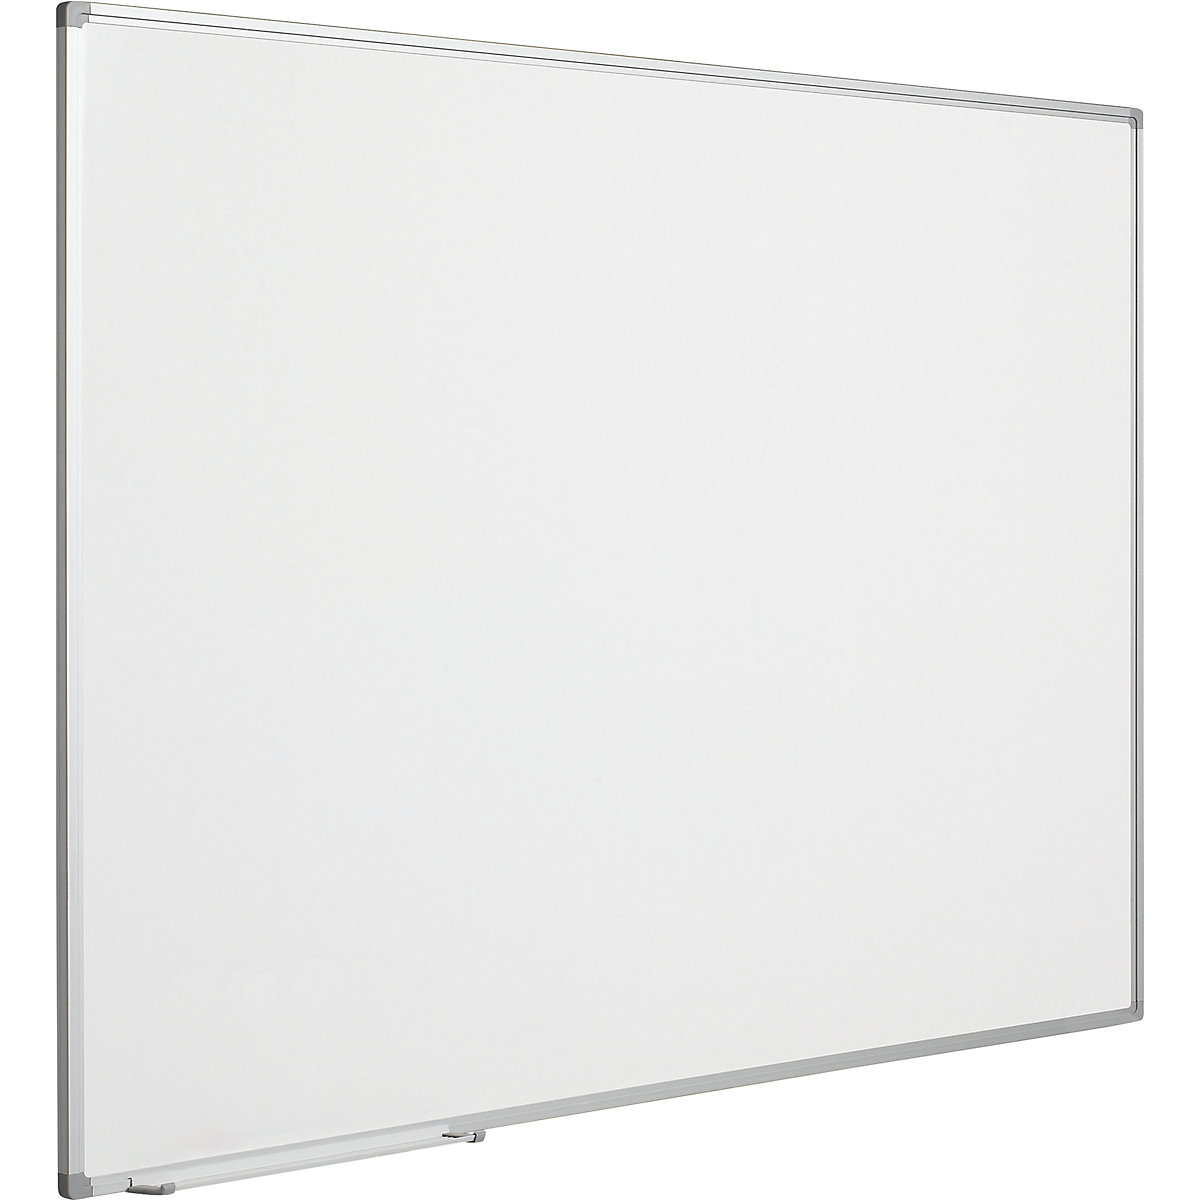 Biała tablica Economy – eurokraft pro, blacha stalowa, lakierowana, szer. x wys. 2400 x 1200 mm-1